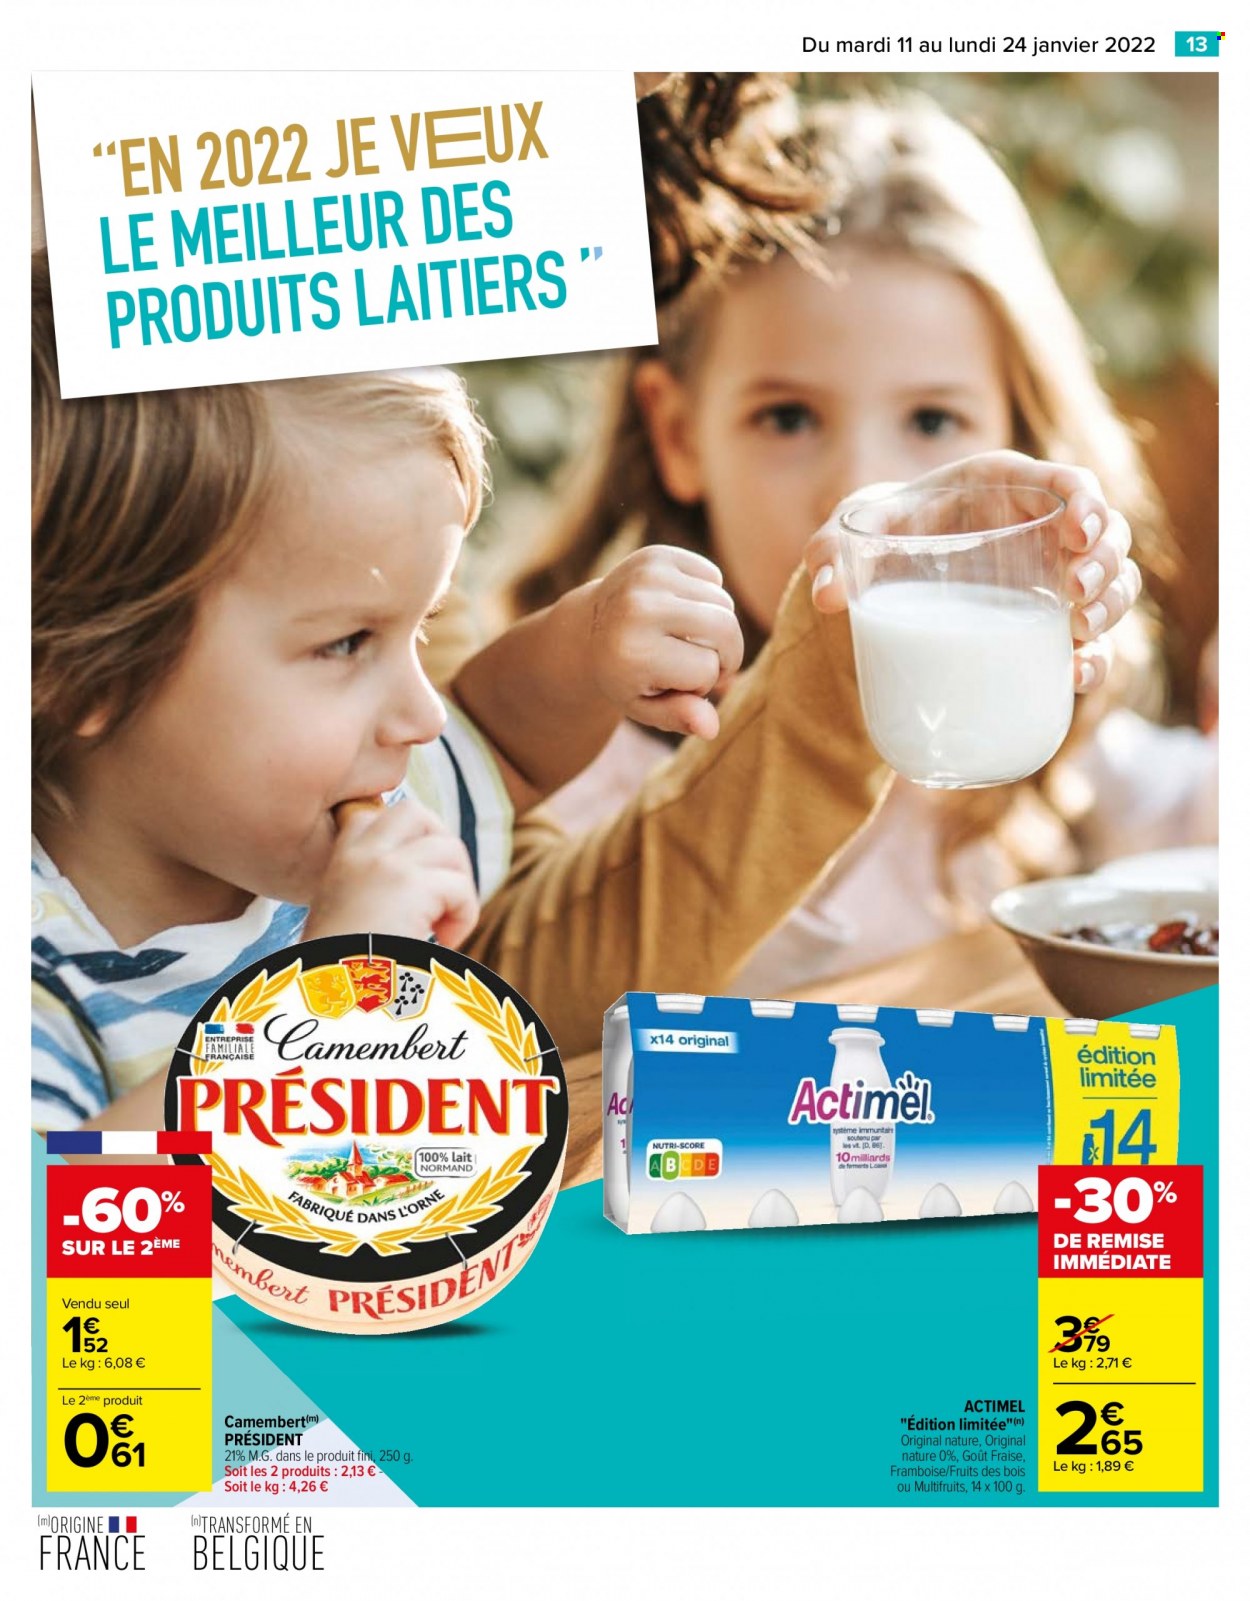 thumbnail - Catalogue Carrefour Hypermarchés - 11/01/2022 - 24/01/2022 - Produits soldés - camembert, Président, Actimel, lait. Page 13.